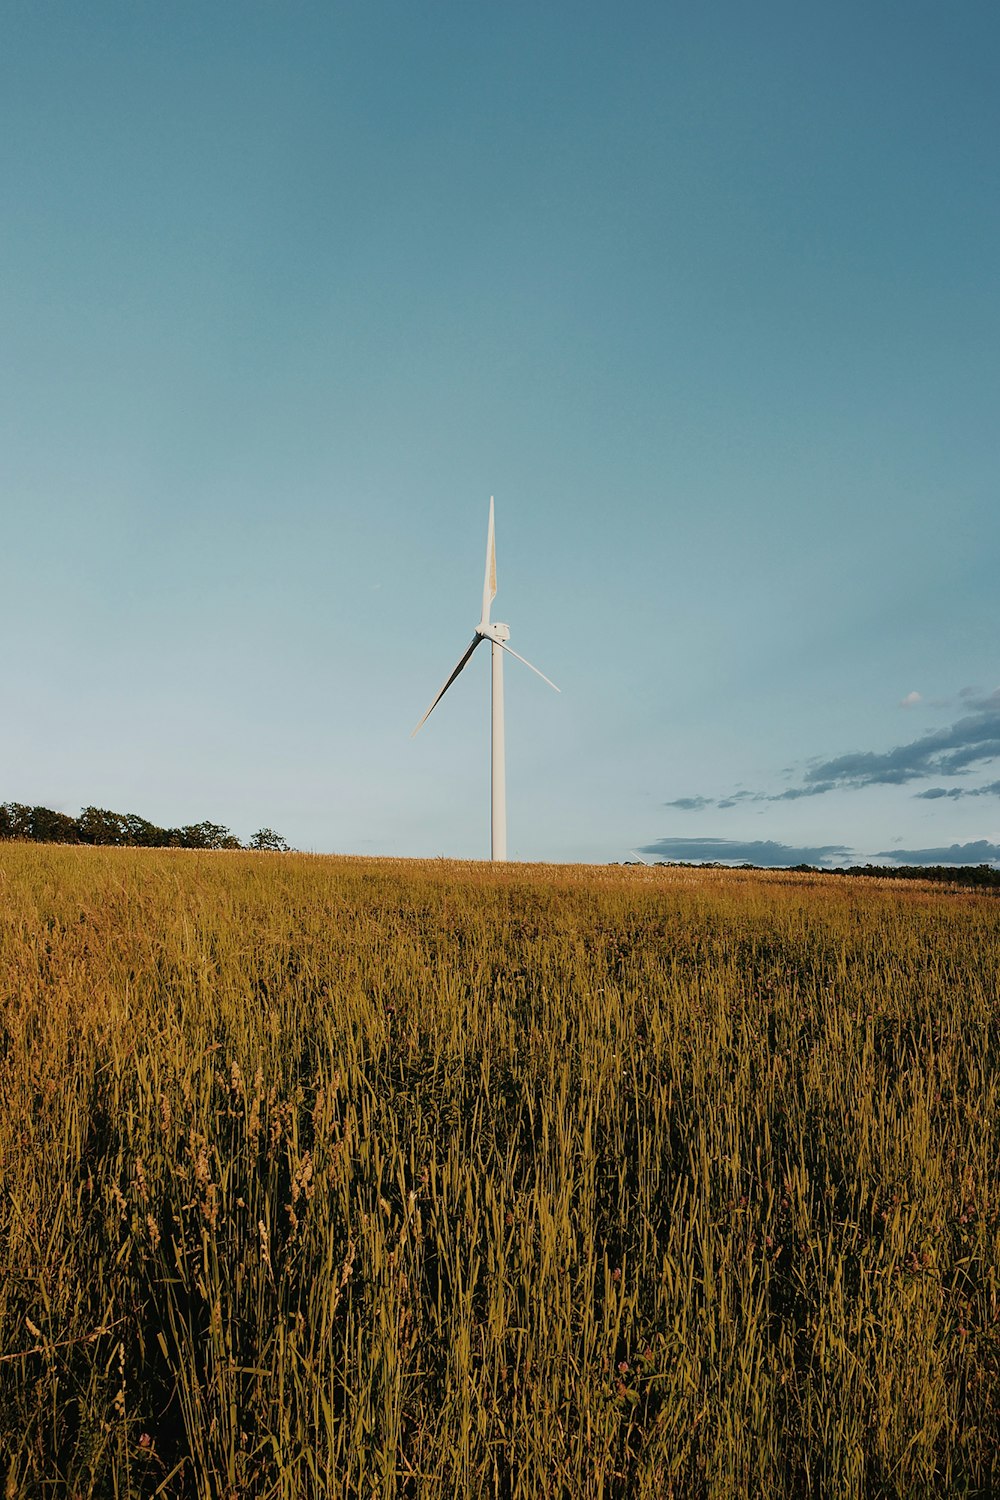 white wind turbine on brown grass field under blue sky during daytime